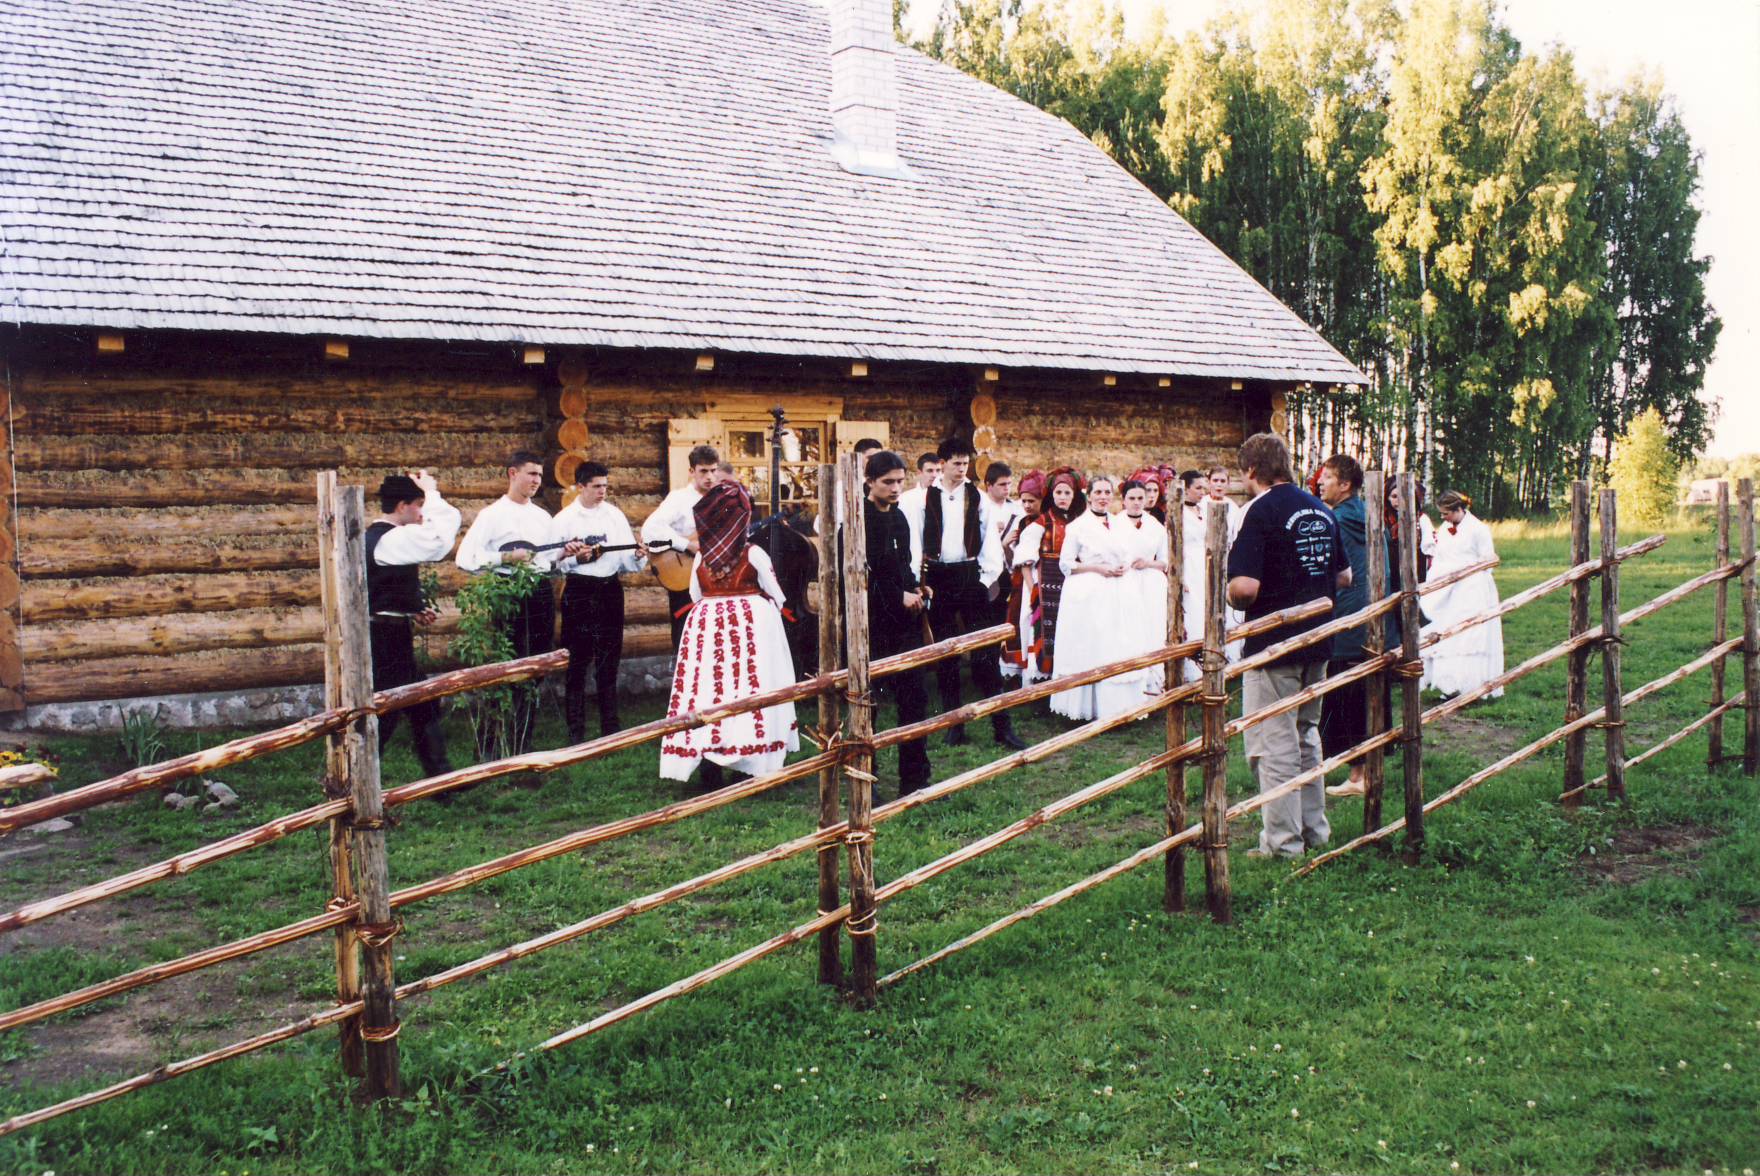 Rahvusvahelise Folkloorifestivali Baltica 2004 maapäev muuseumis. Folklooriansambel Horvaatiast Tsäimaja  ees.